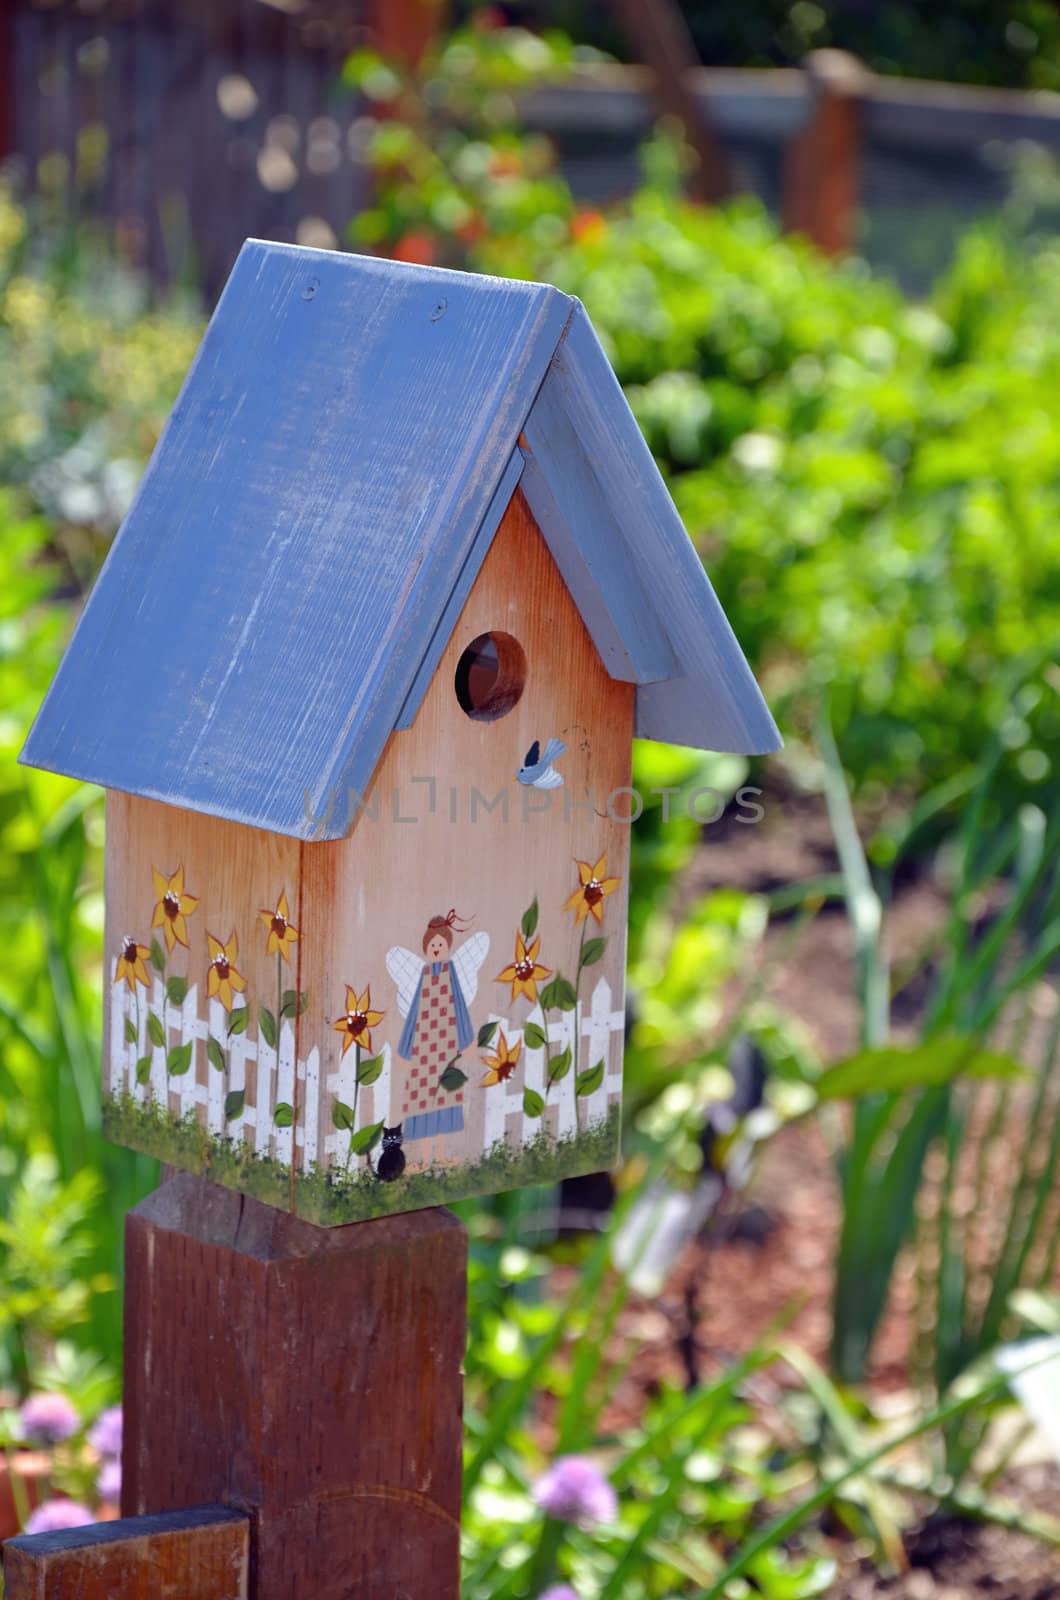 Decorated birdhouse in summer garden